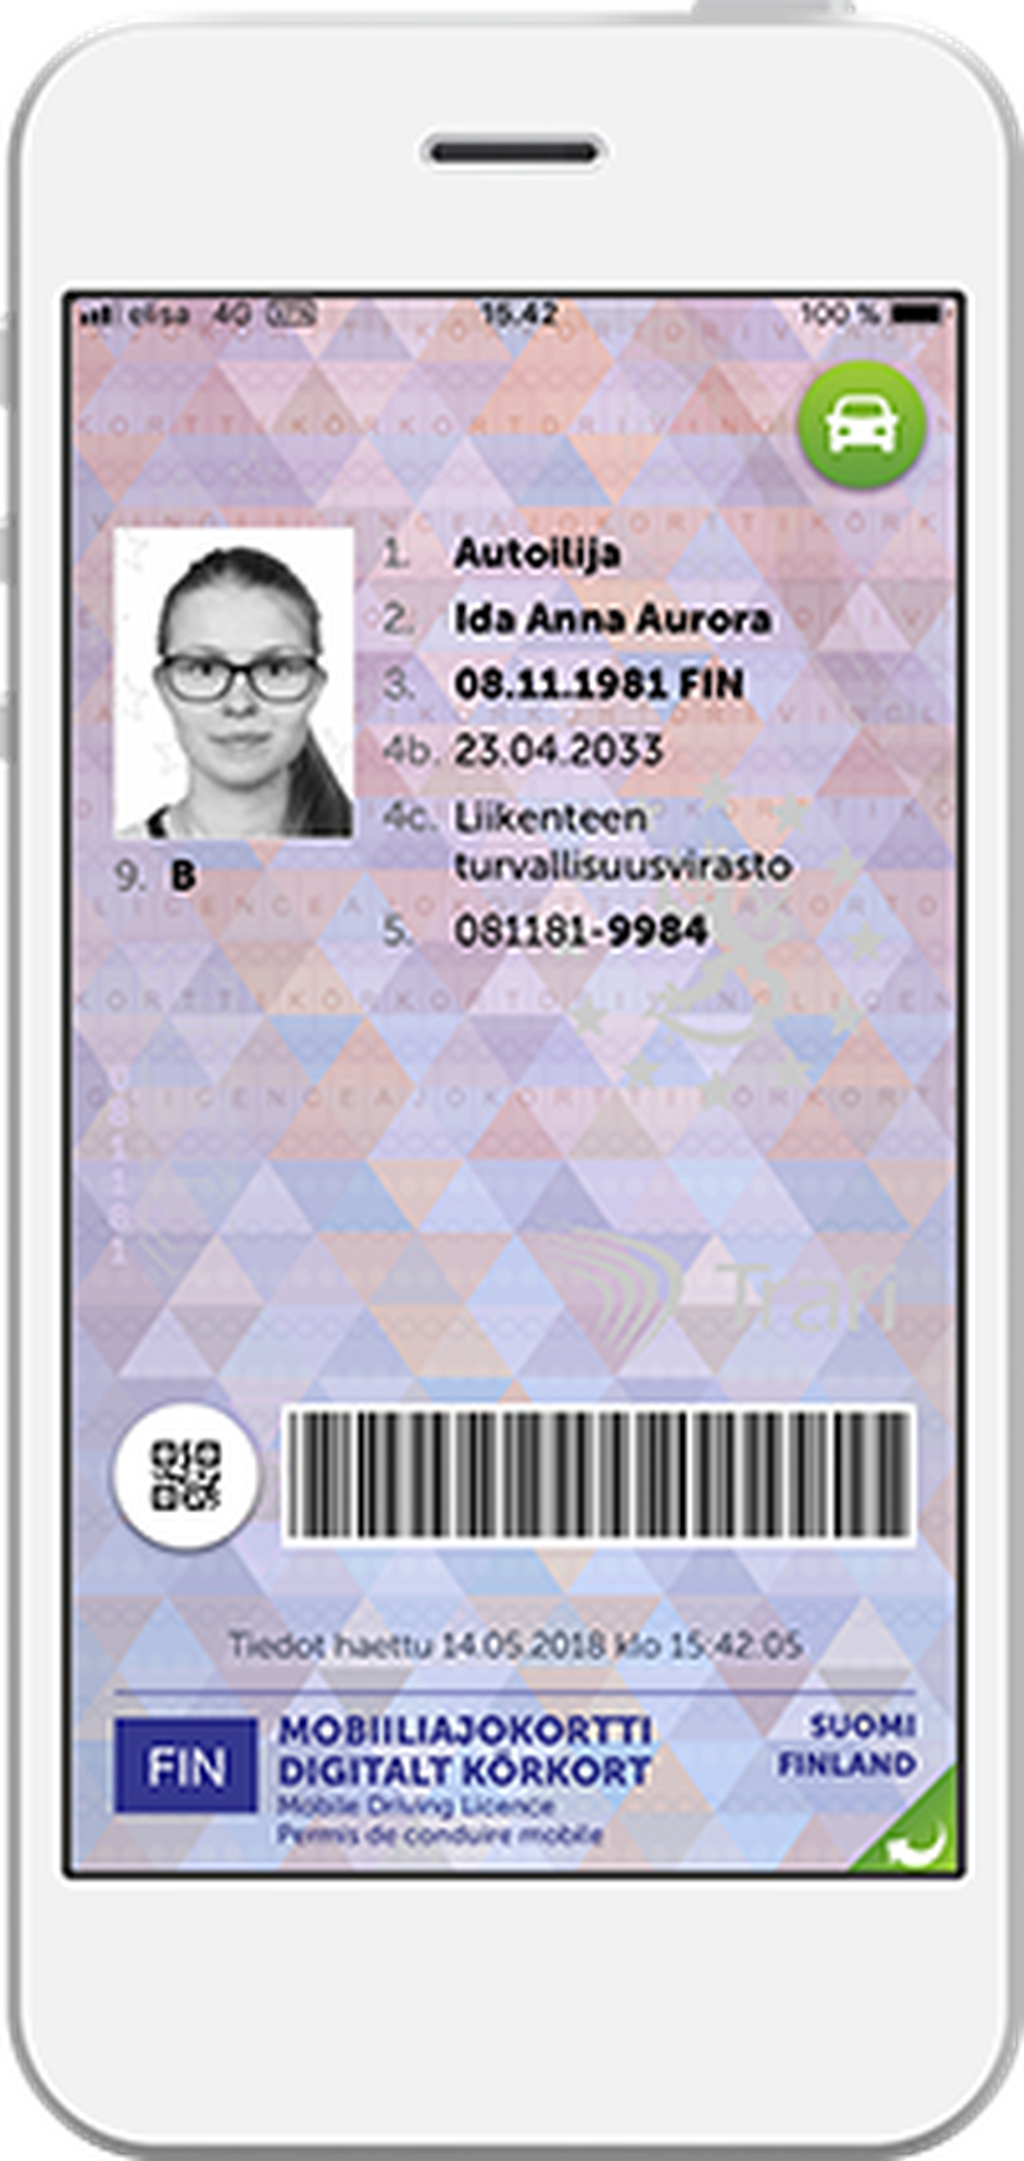 Sähköinen maksuton ajokortti käyttöön helmikuussa: Pian riittää kännykän vilautus